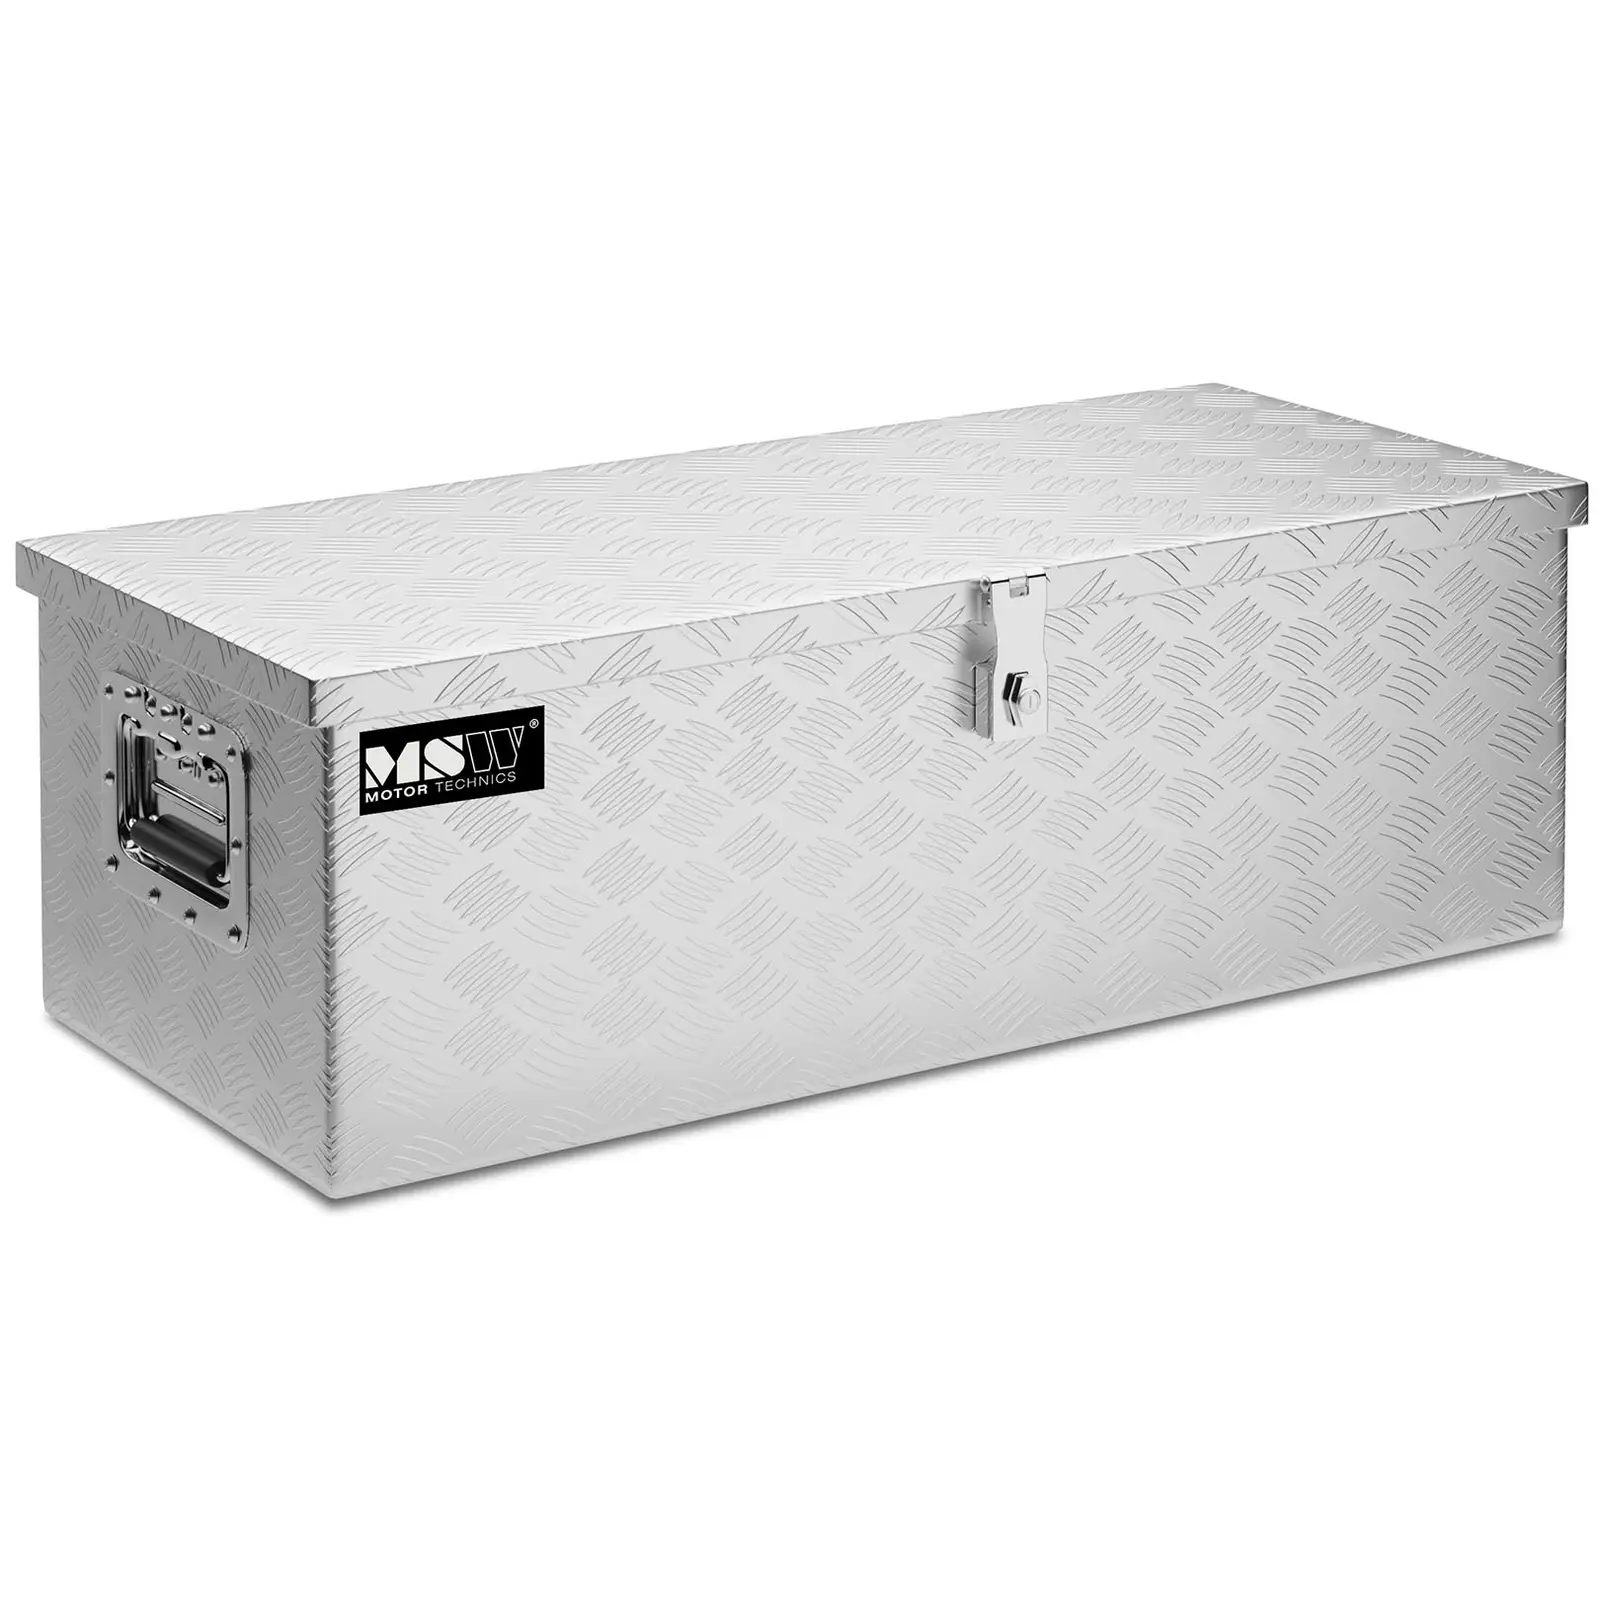 Aliuminio įrankių dėžė - 76,5 x 33,5 x 24 cm - 48 l